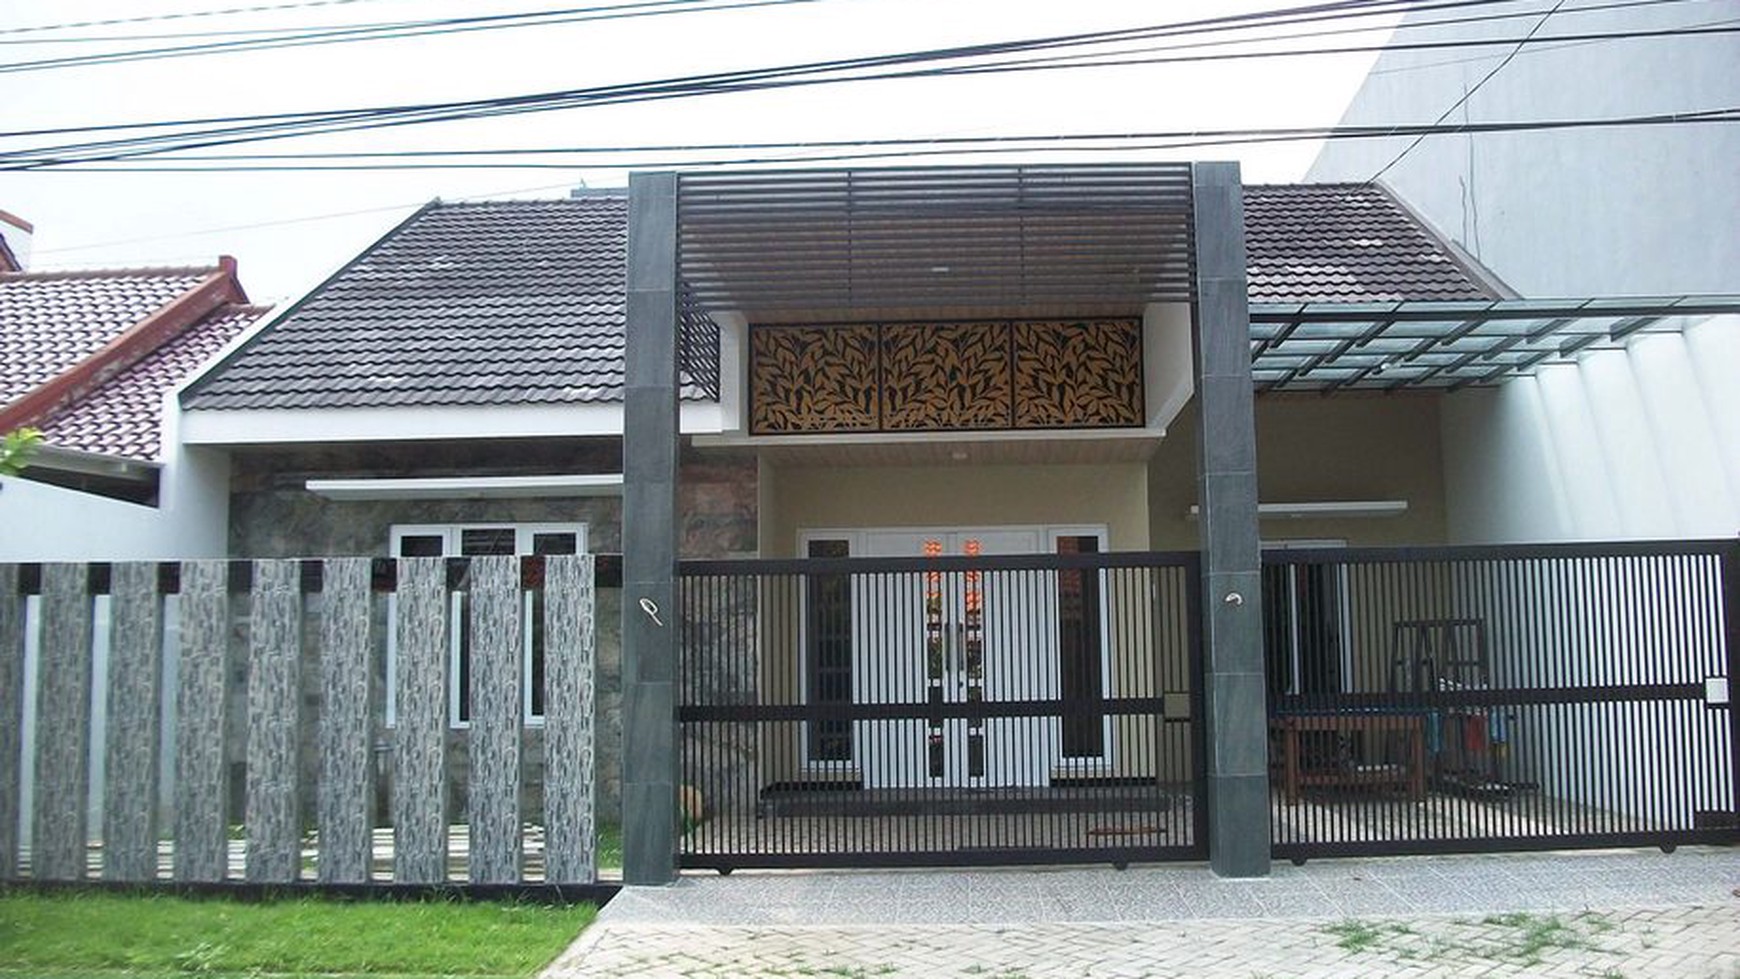 Rumah di Jemursari Surabaya, Lokasi Strategis, Minimalis, Dekat Hotel, Row Jalan 6 meter, ada taman depan & belakang rumah, Siap Huni